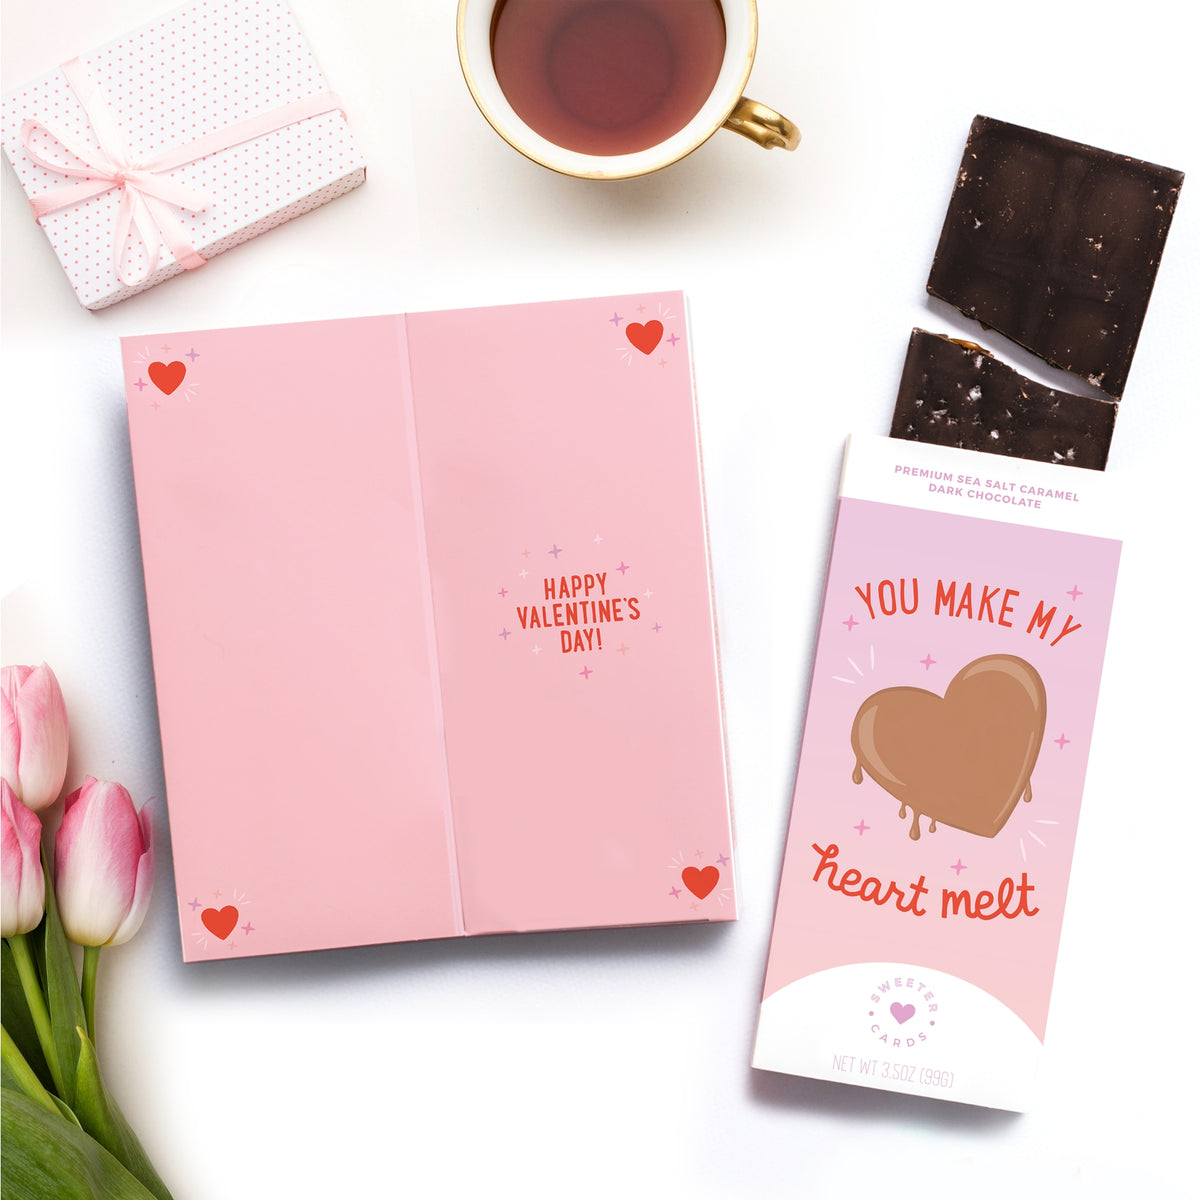 Make My Heart Melt Card + Chocolate Bar